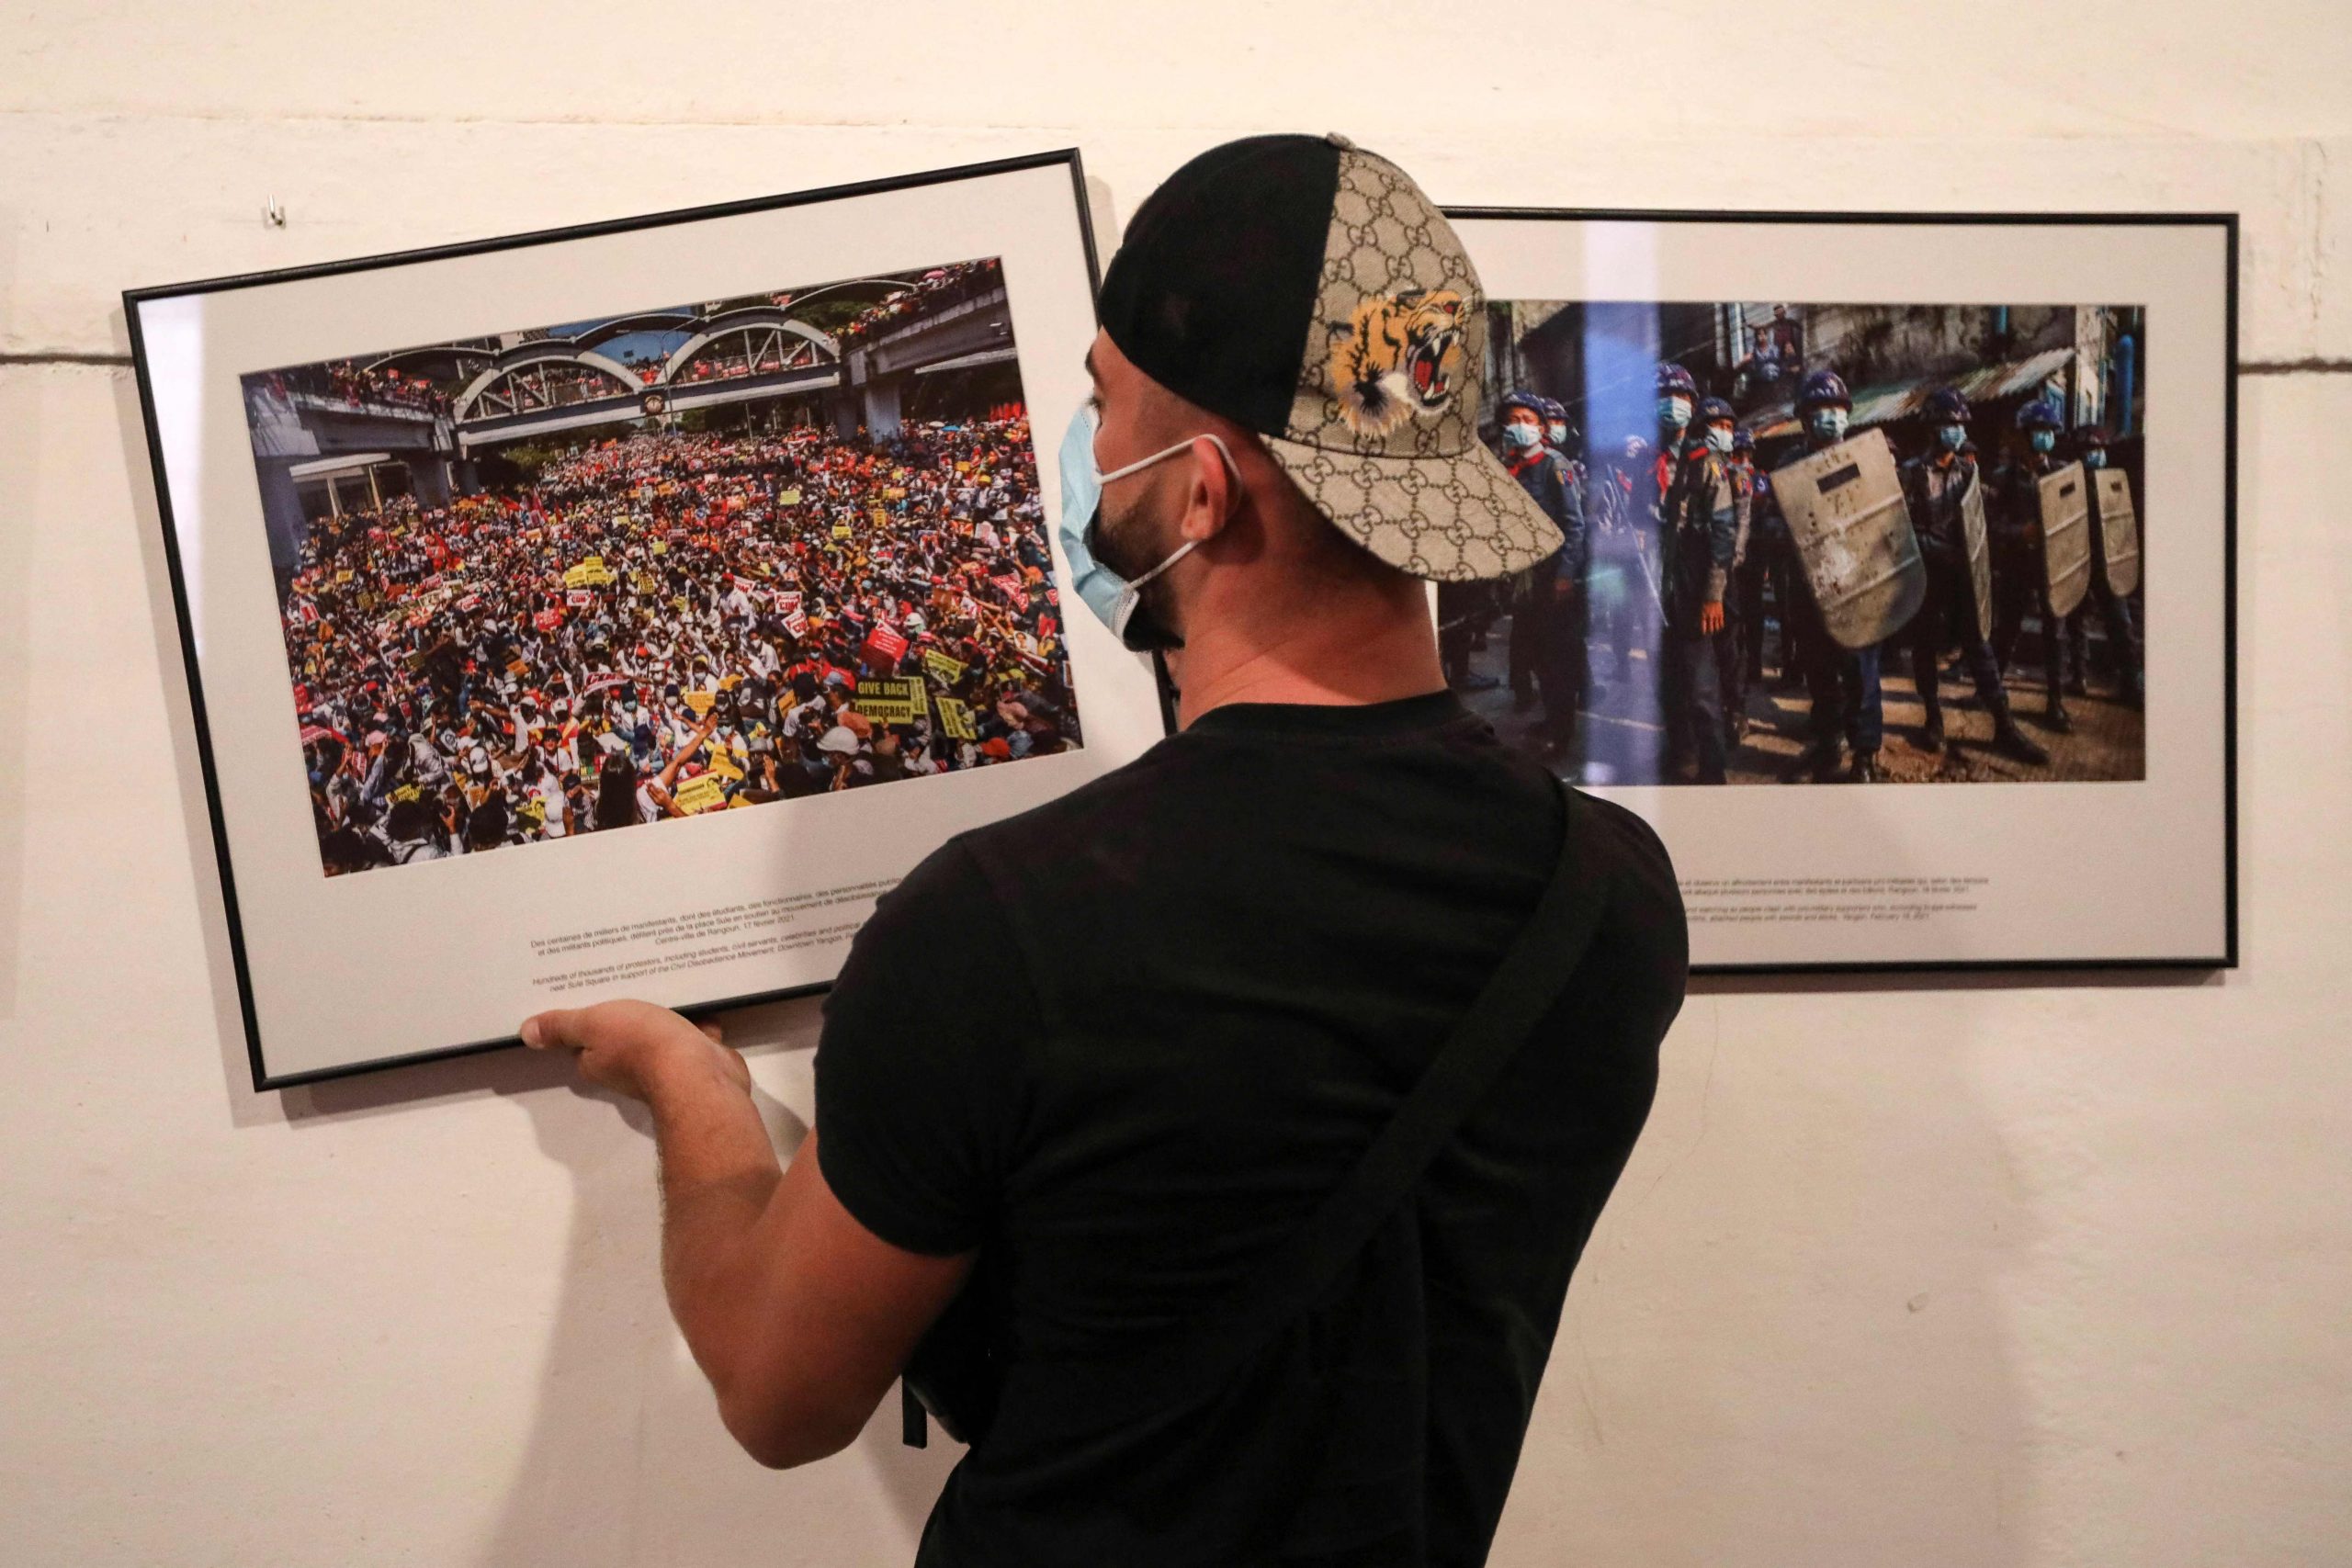 缅甸摄记夺国际新闻摄影奖 基于安全不公布名字